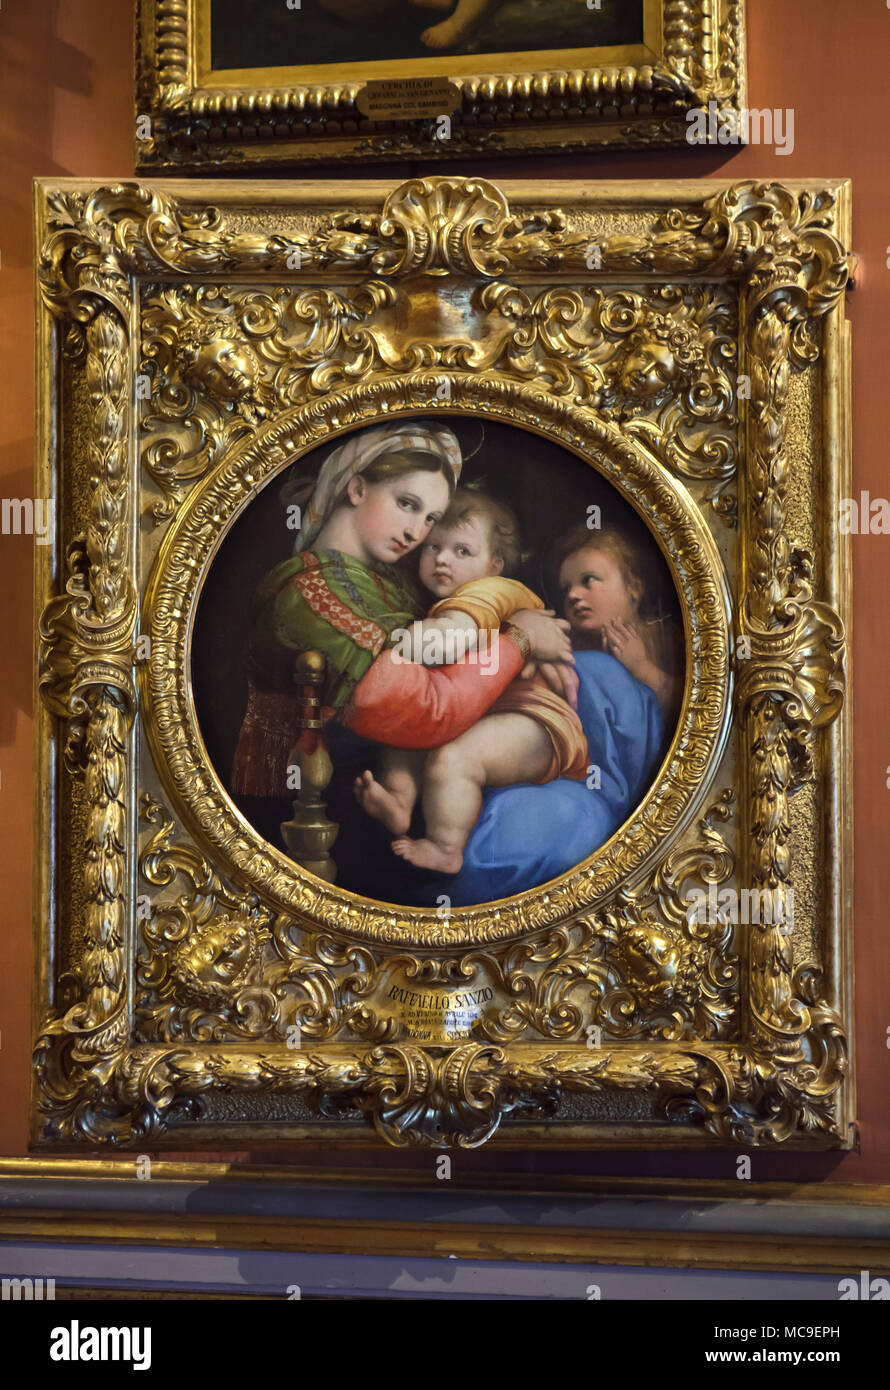 Peinture 'Madonna della seggiola" (1513-1514) par le peintre italien de la Renaissance Raphaël sur l'affichage dans la Galerie Palatine (Galleria Palatina) dans le Palais Pitti à Florence, Toscane, Italie. Banque D'Images